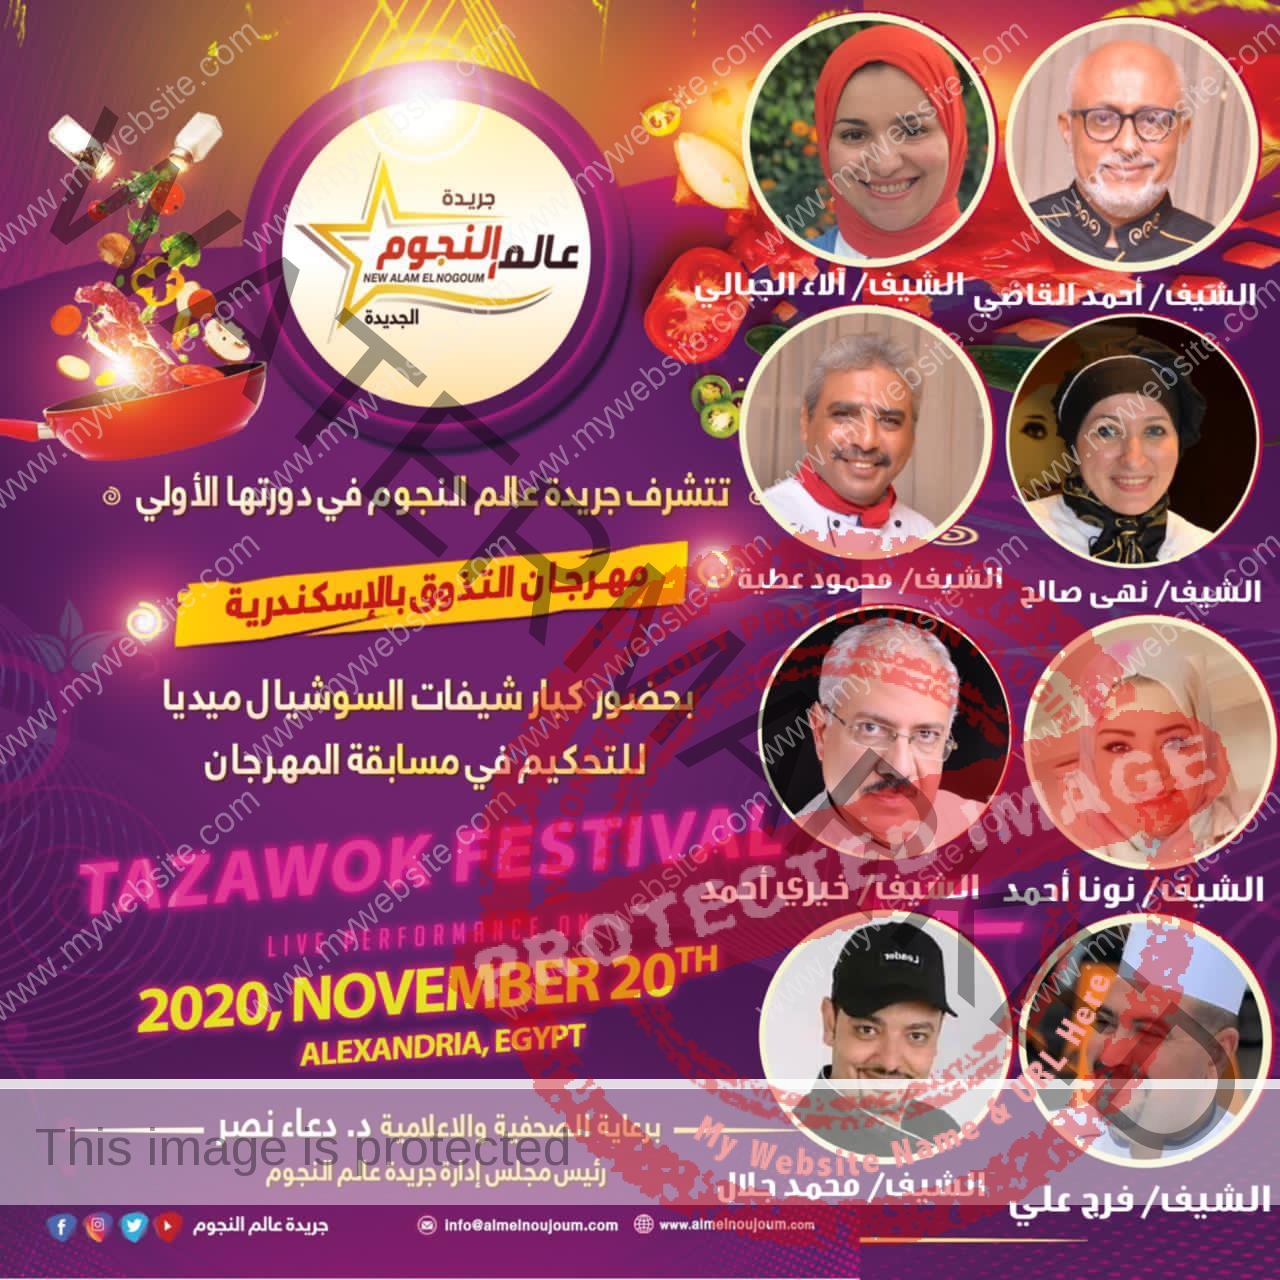 موعد إنطلاق مهرجان التذوق الأول بـ الإسكندرية برعاية عالم النجوم في دورتها الأولي